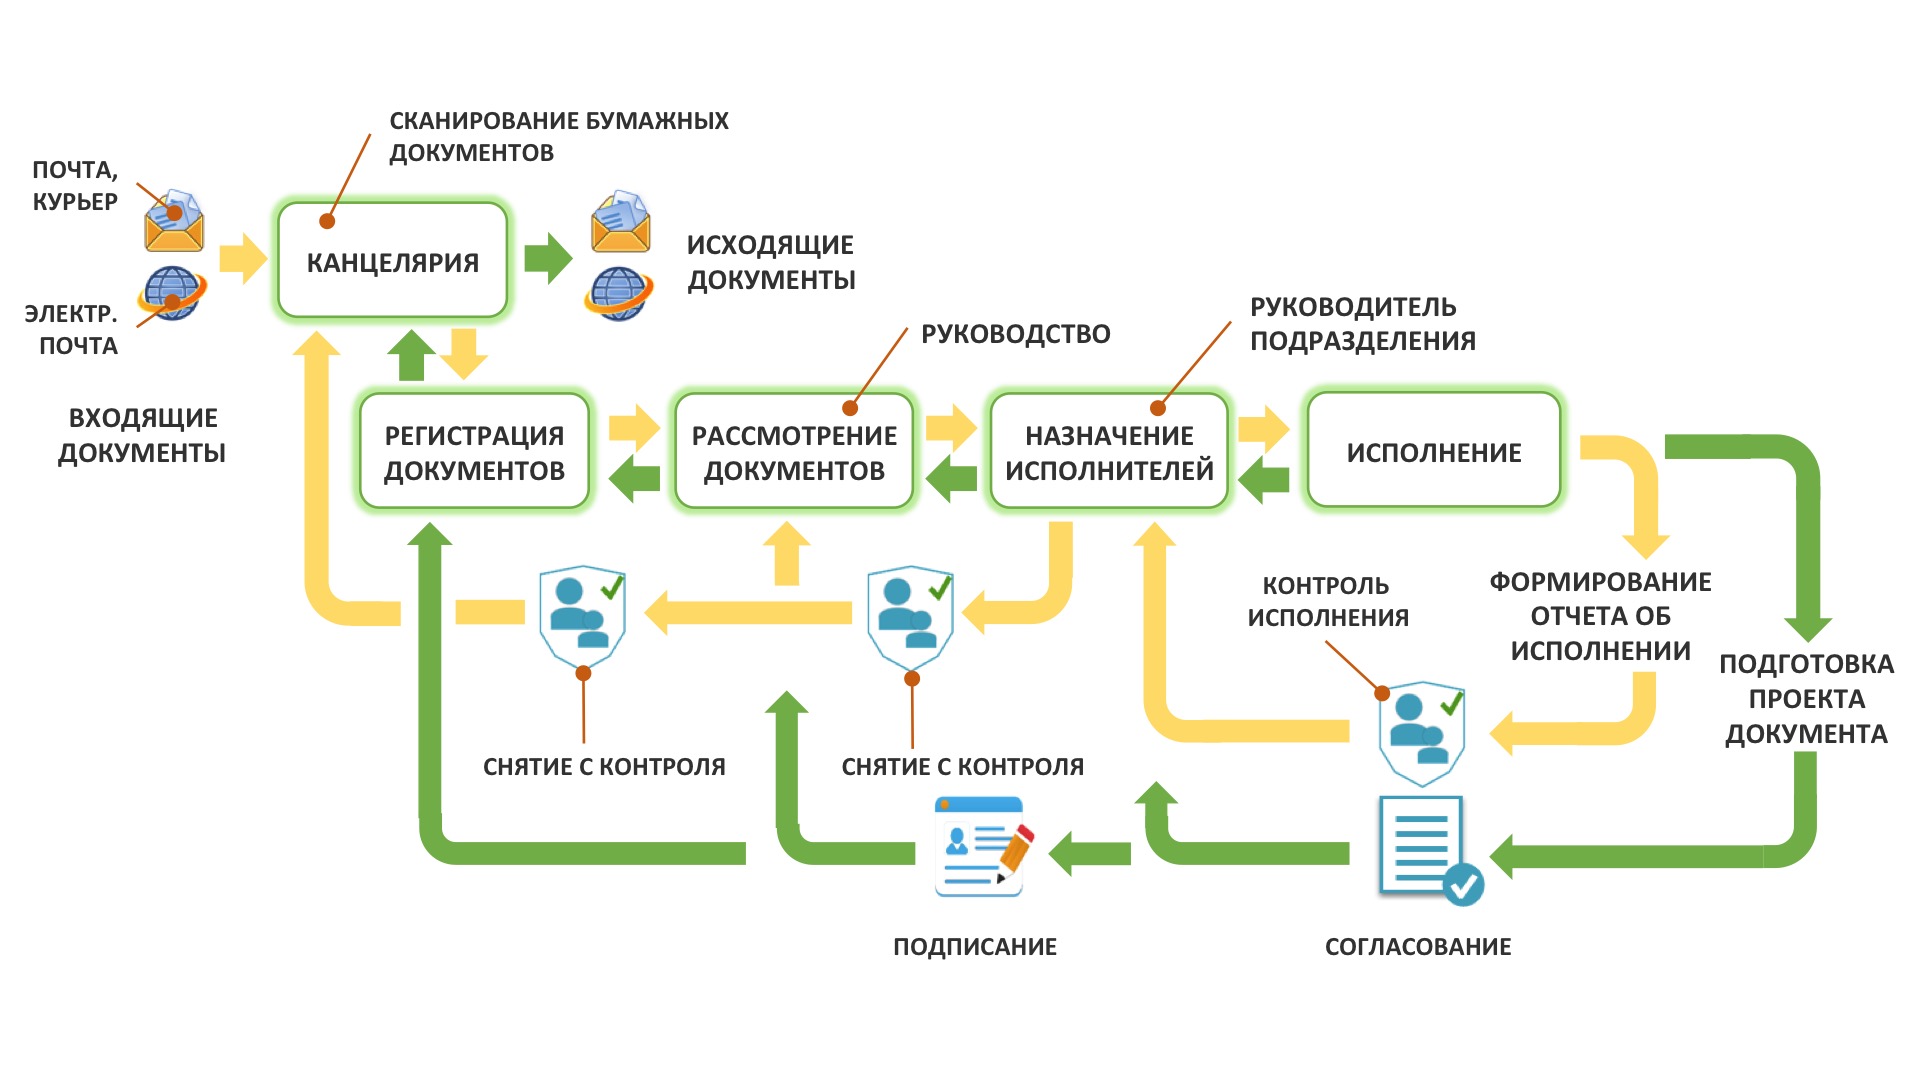 Общая схема процессов движения кадровых документов при использовании КЭДО.